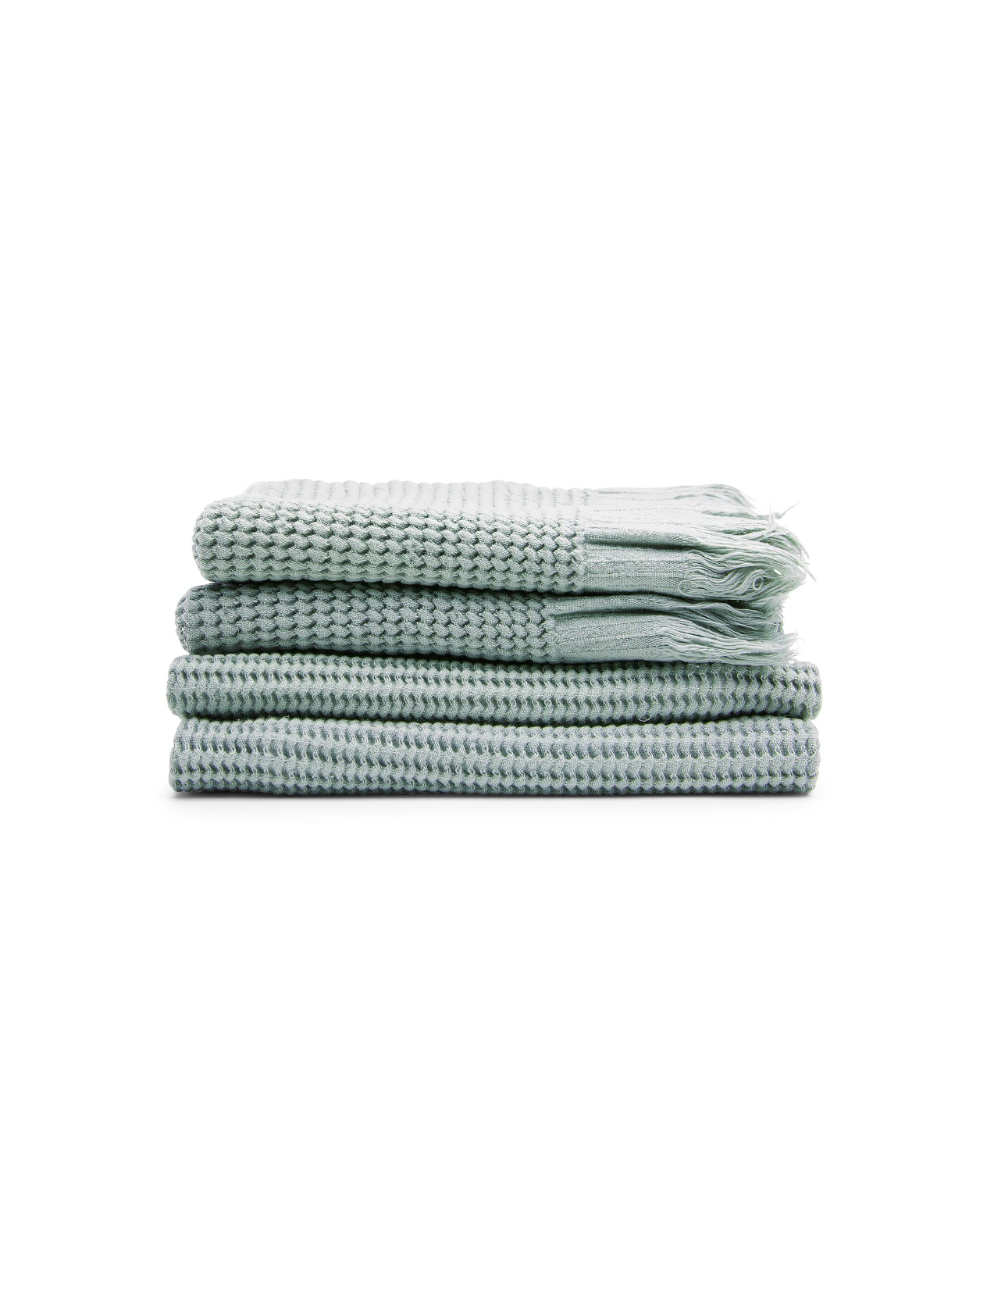 Stack of green ella towels